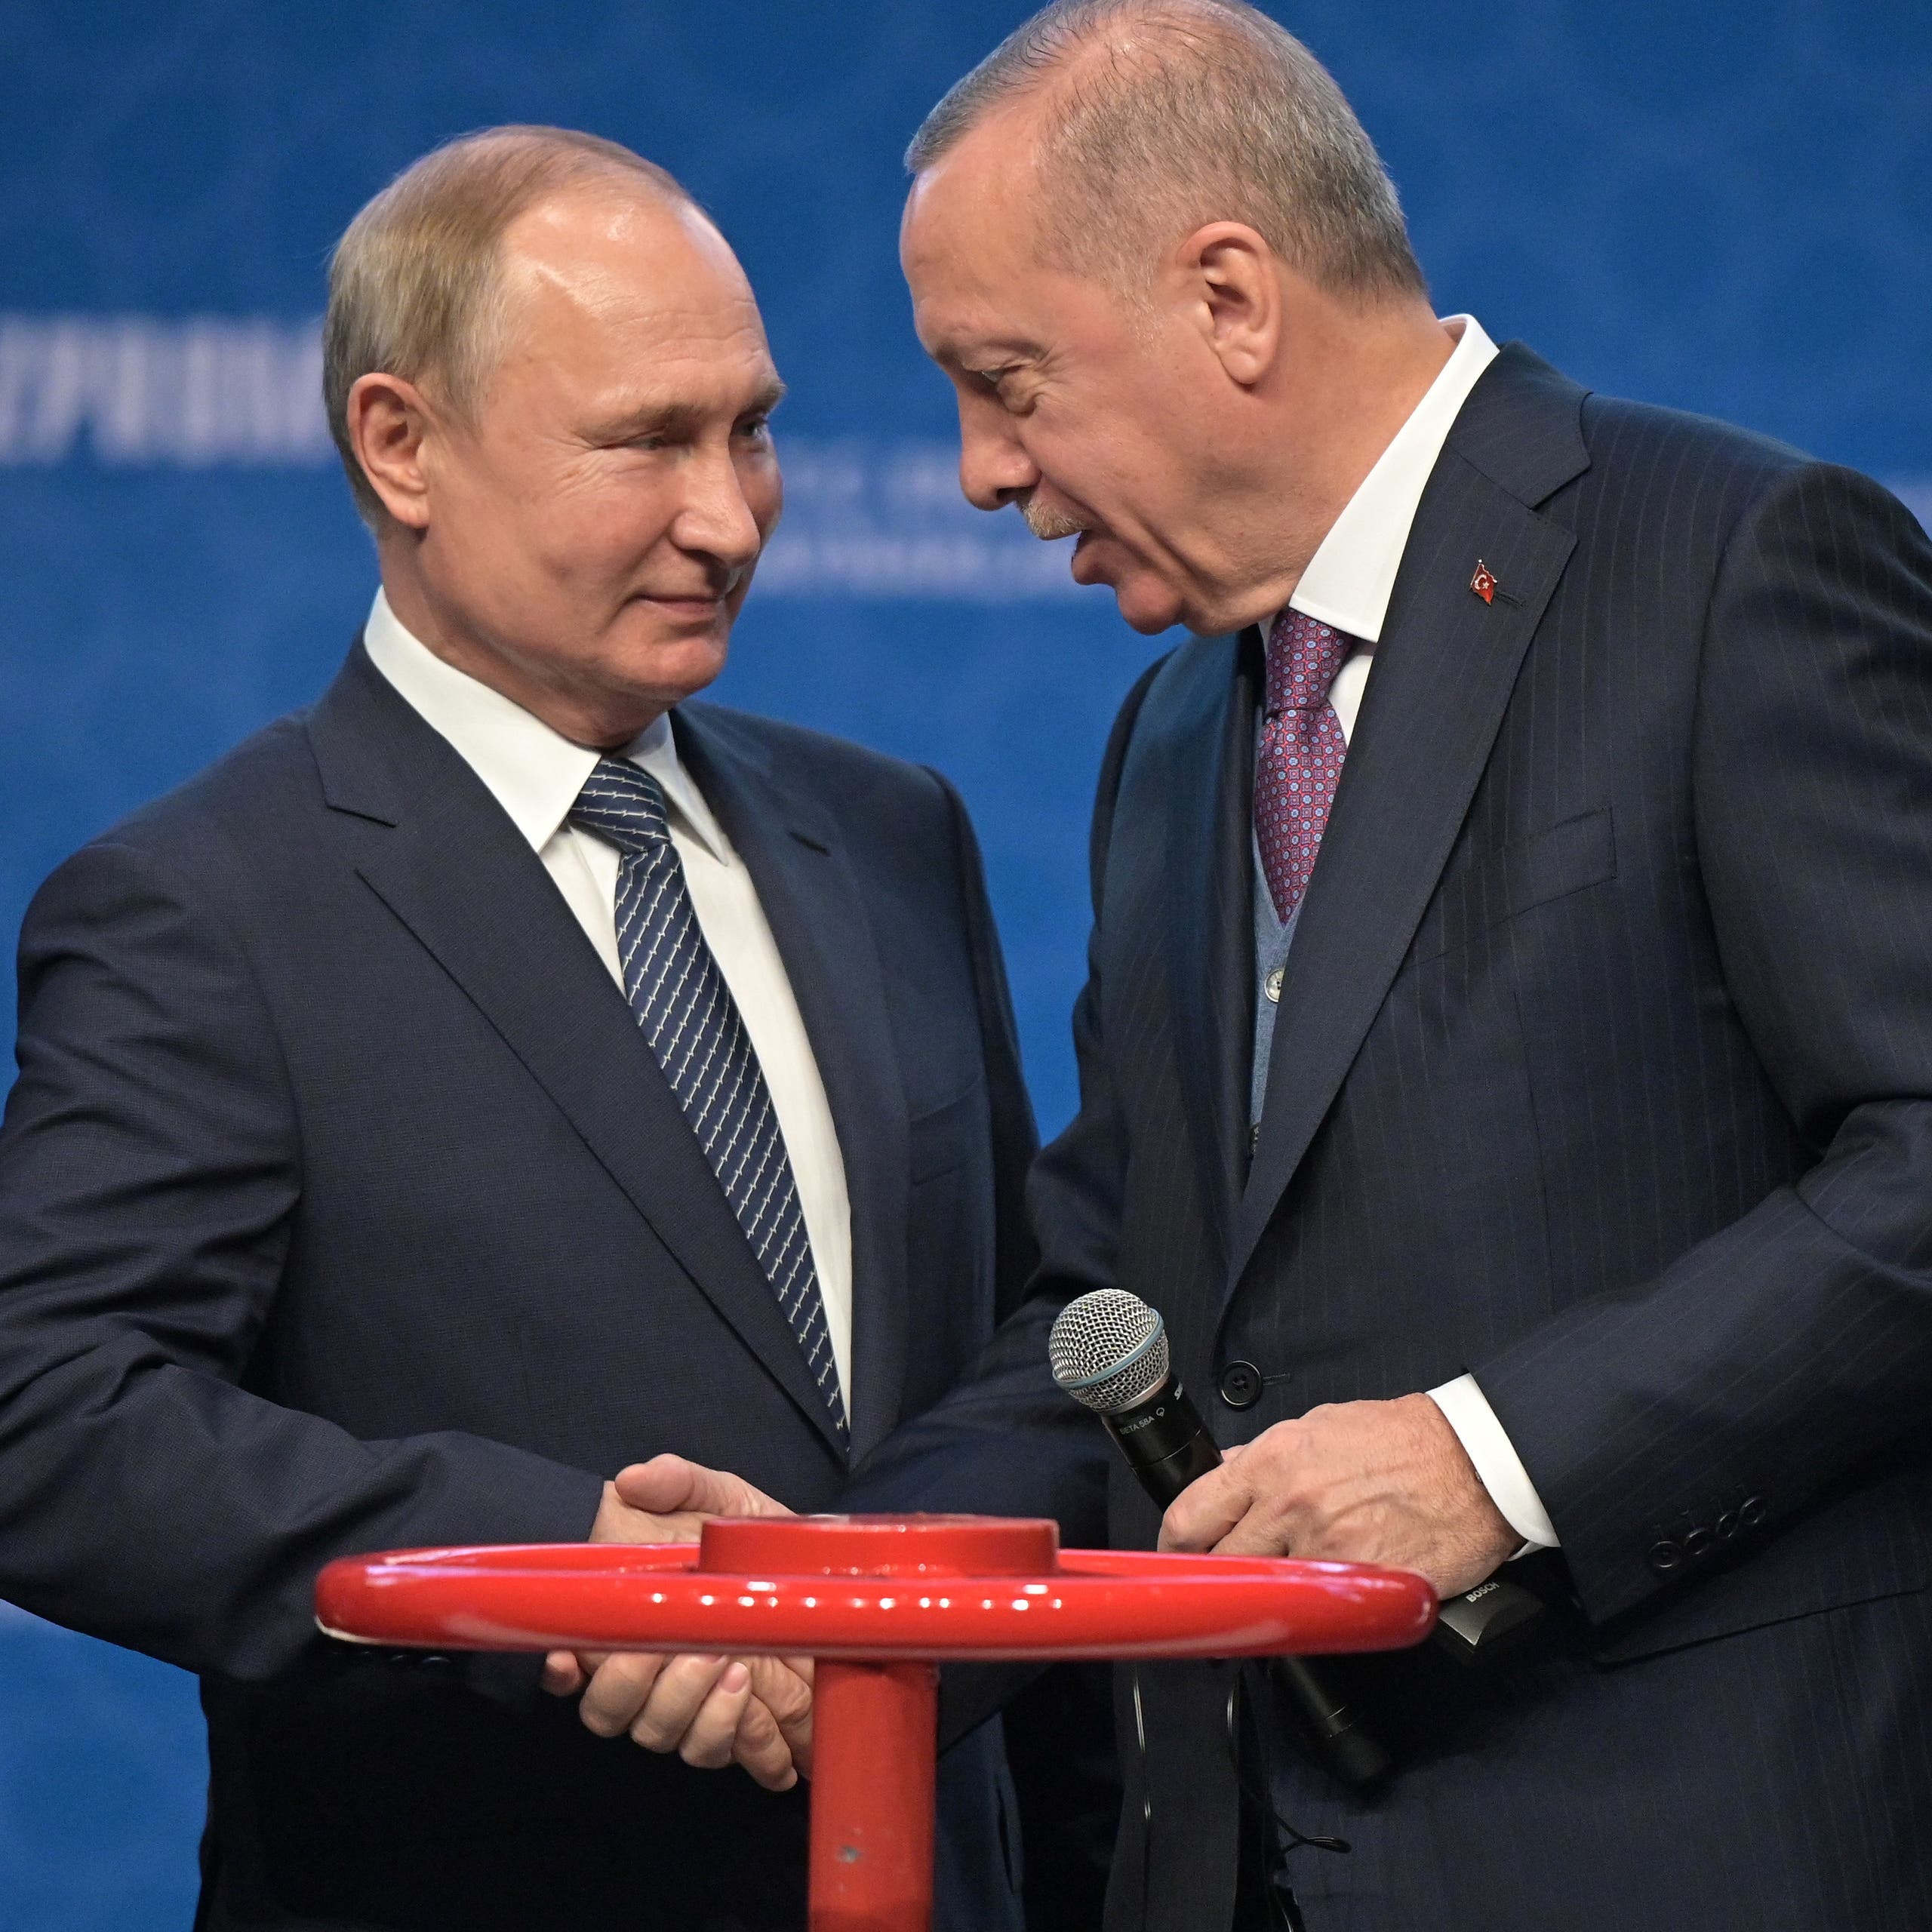 اللعبة العبثية بين أردوغان وبوتين